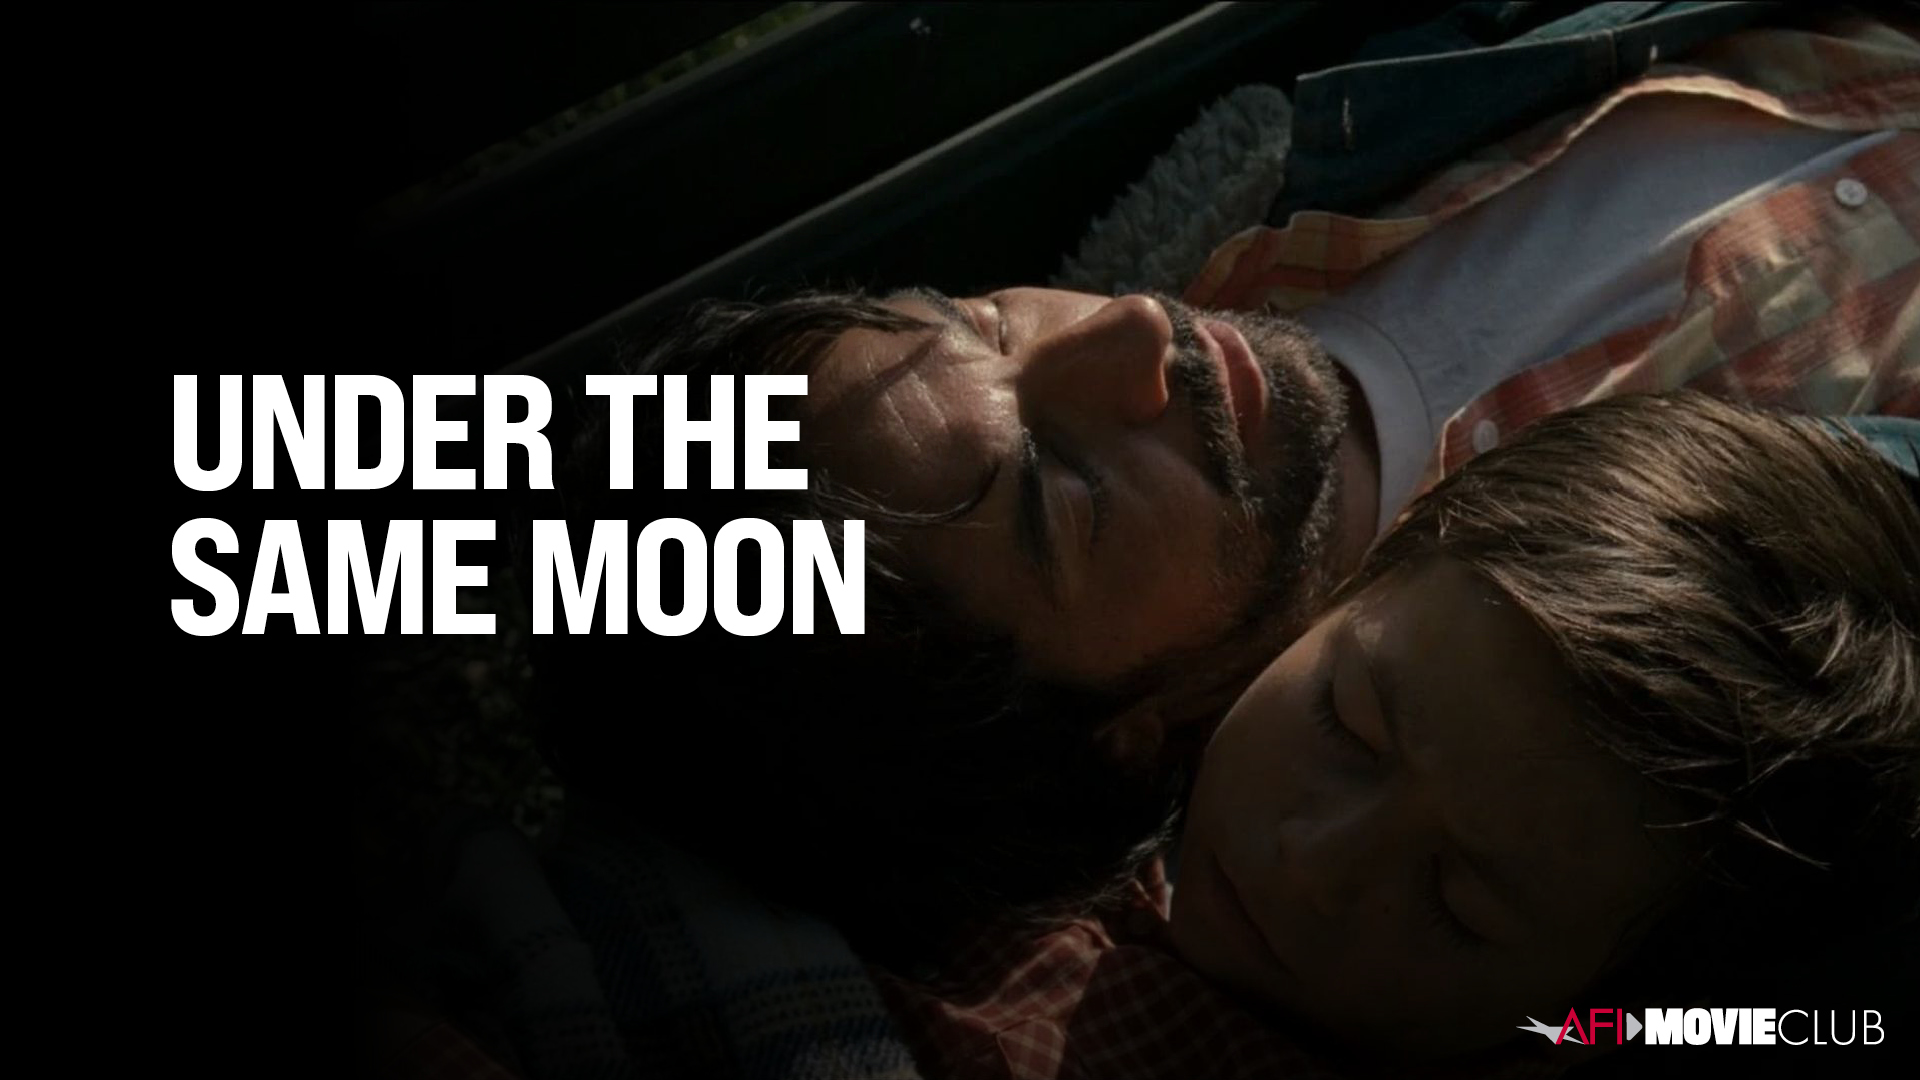 Under the Same Moon Film Still - Eugenio Derbez and Adrian Alonso